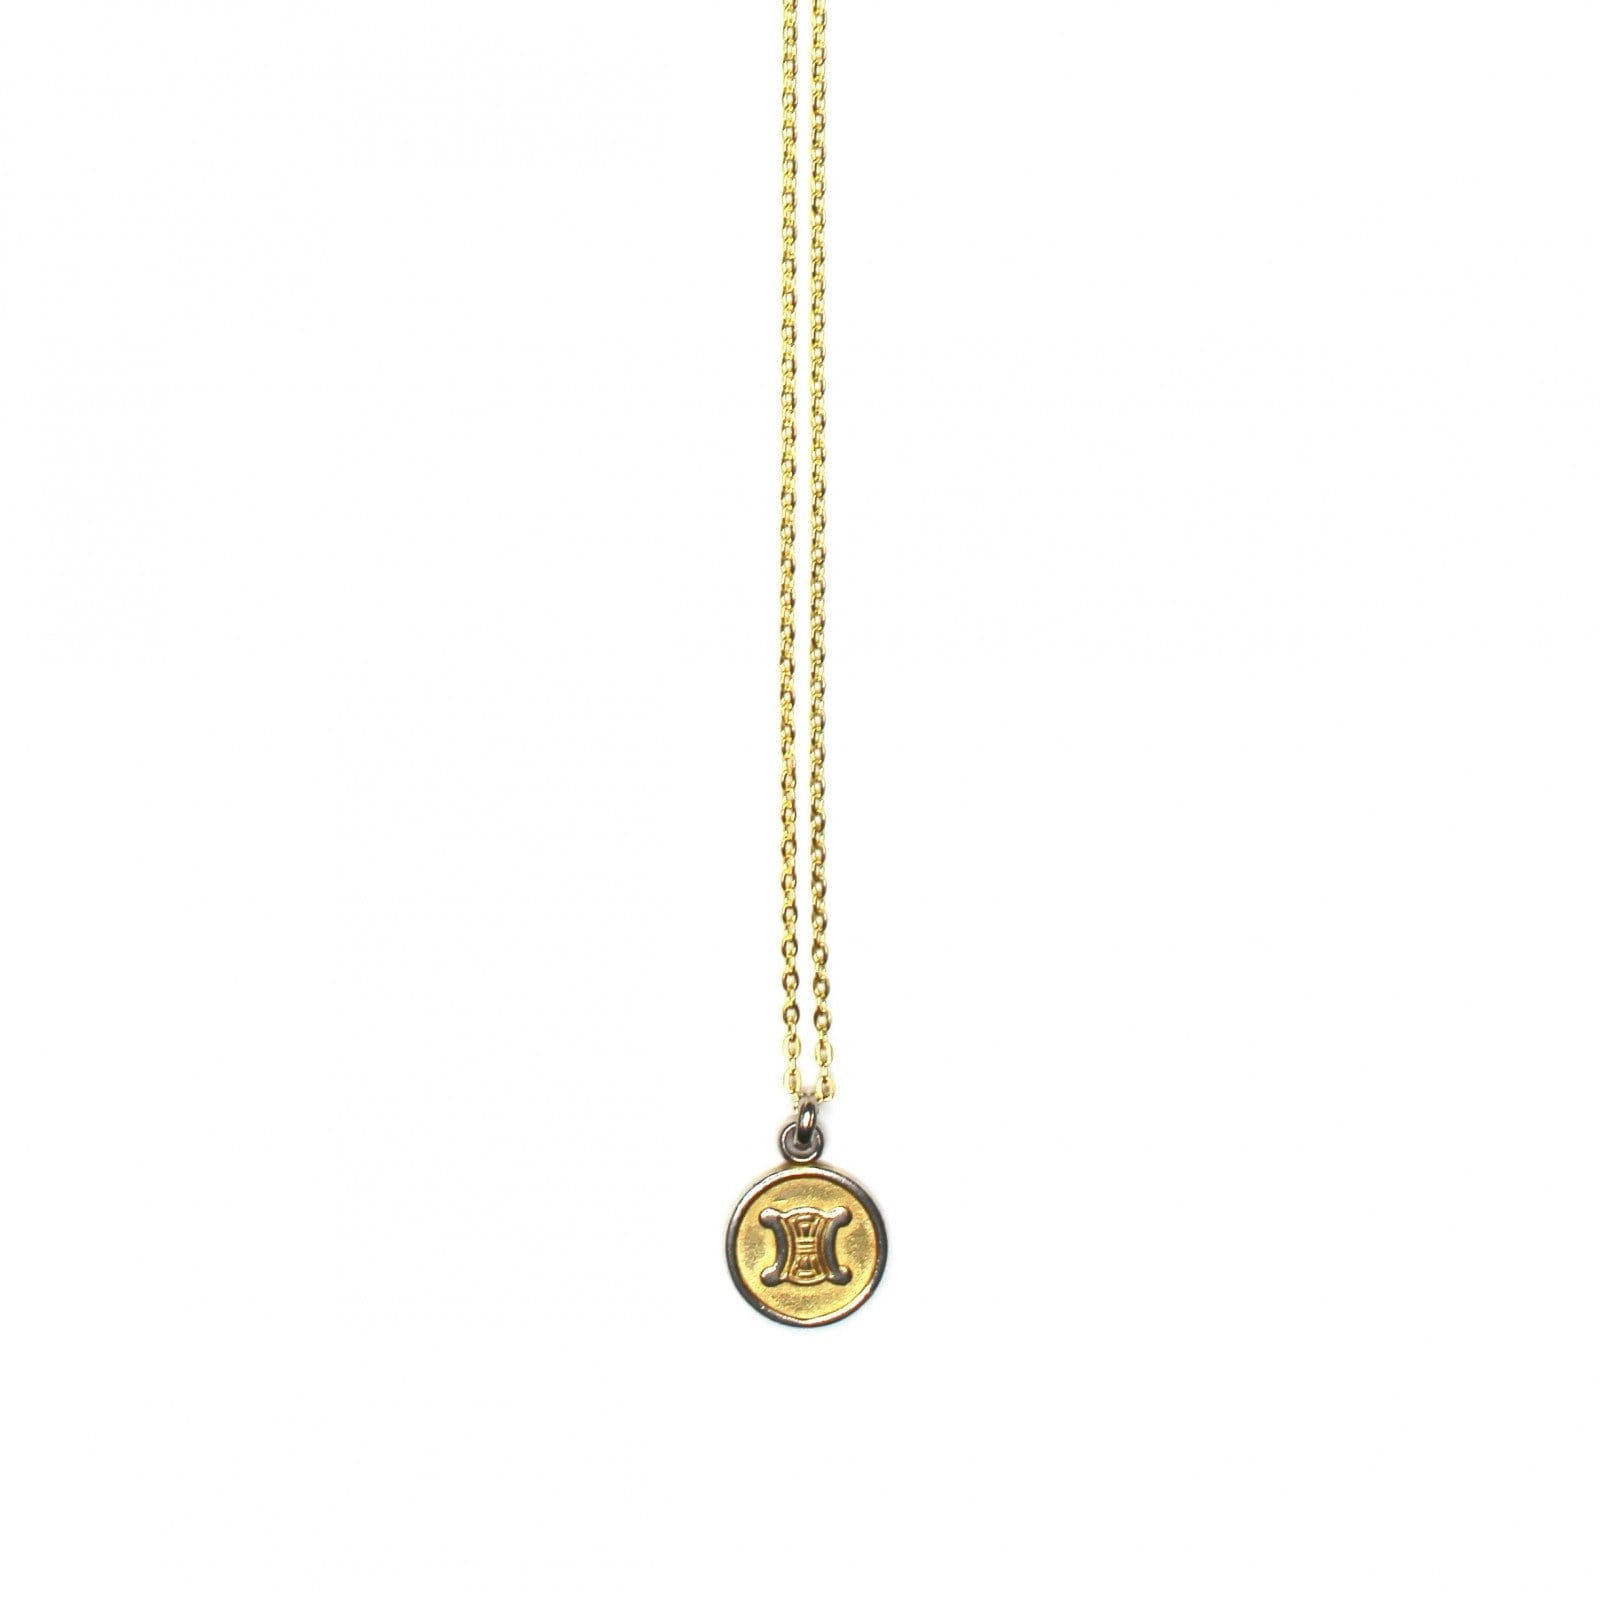 Chanel necklace pendant auth - Gem